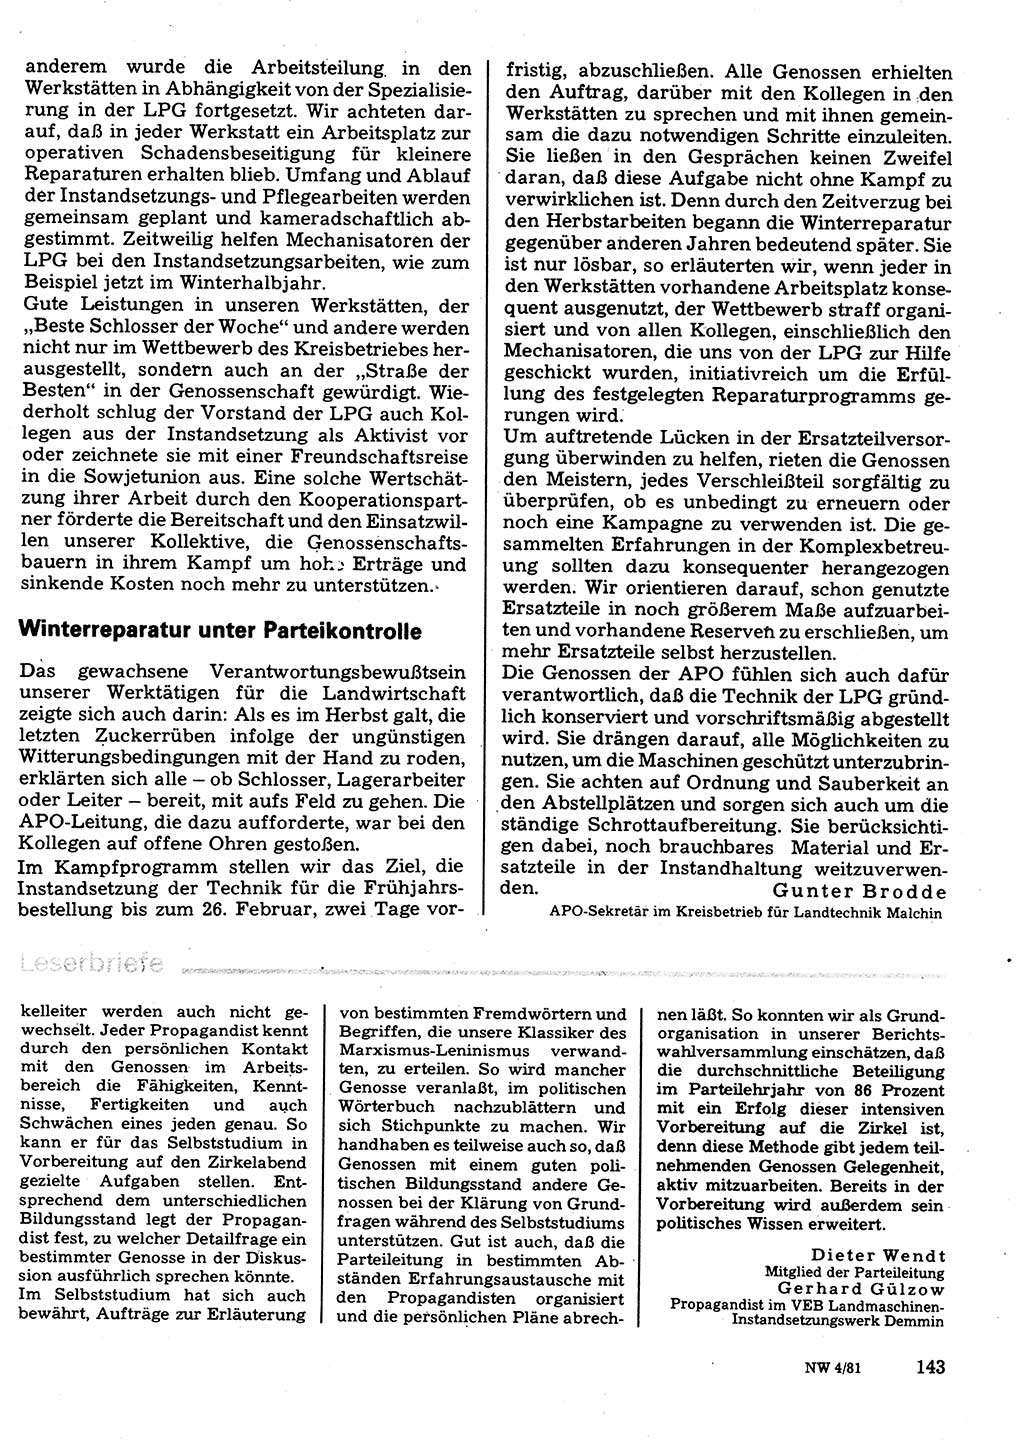 Neuer Weg (NW), Organ des Zentralkomitees (ZK) der SED (Sozialistische Einheitspartei Deutschlands) für Fragen des Parteilebens, 36. Jahrgang [Deutsche Demokratische Republik (DDR)] 1981, Seite 143 (NW ZK SED DDR 1981, S. 143)